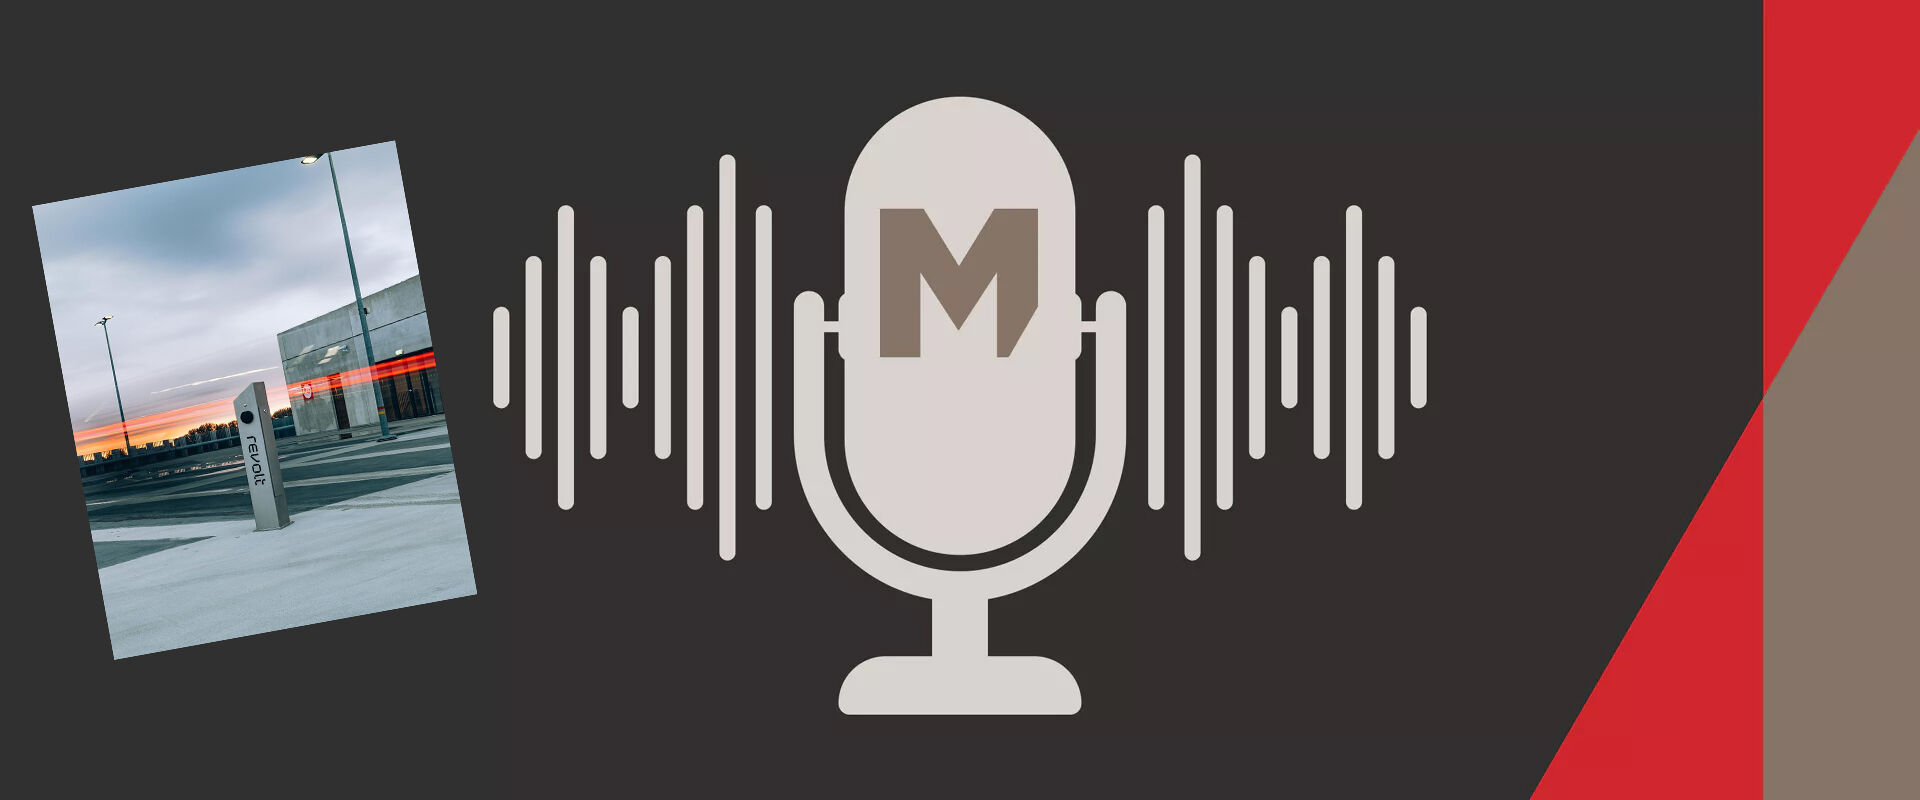 muntstad-podcast-revolt